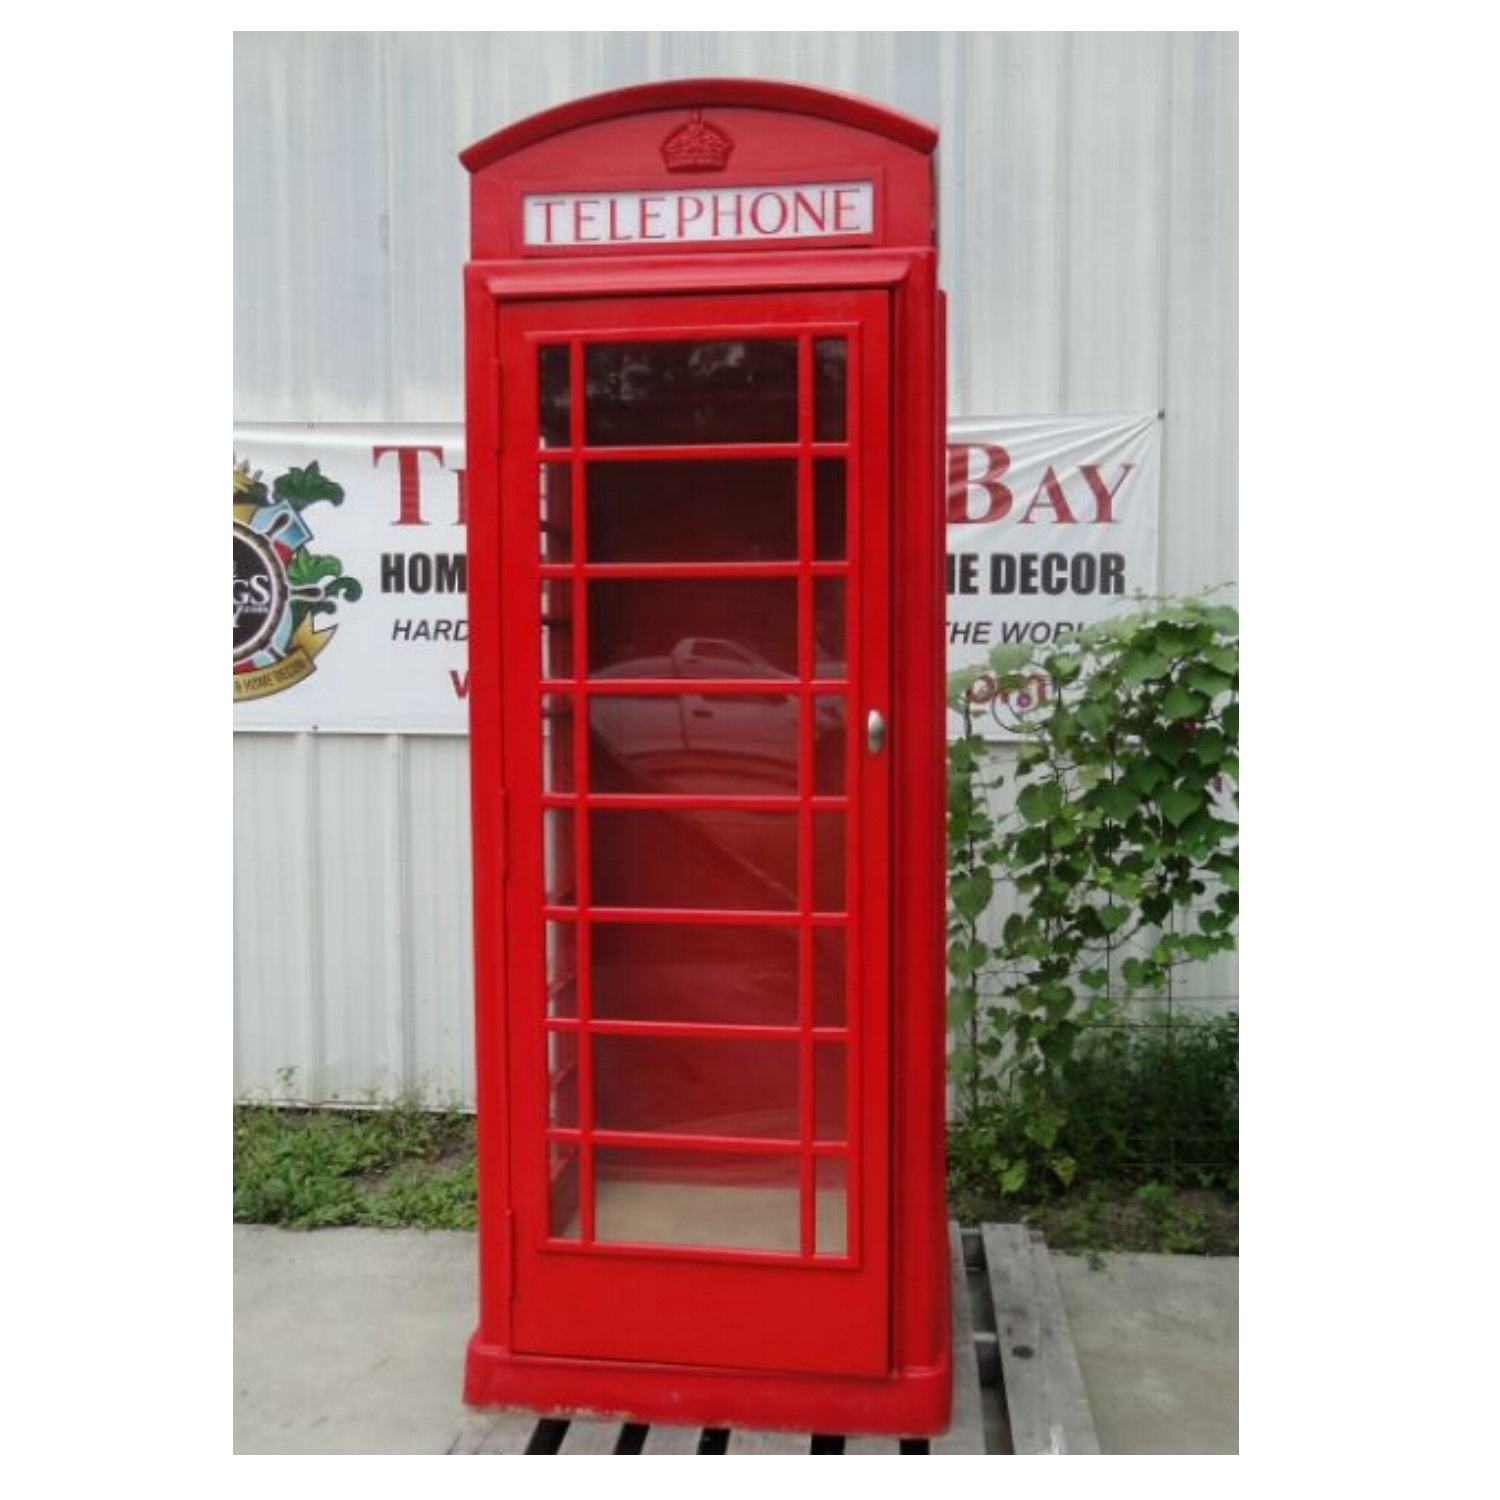 Red British Phone Box No Rust Aluminum Telephone Booth English Not